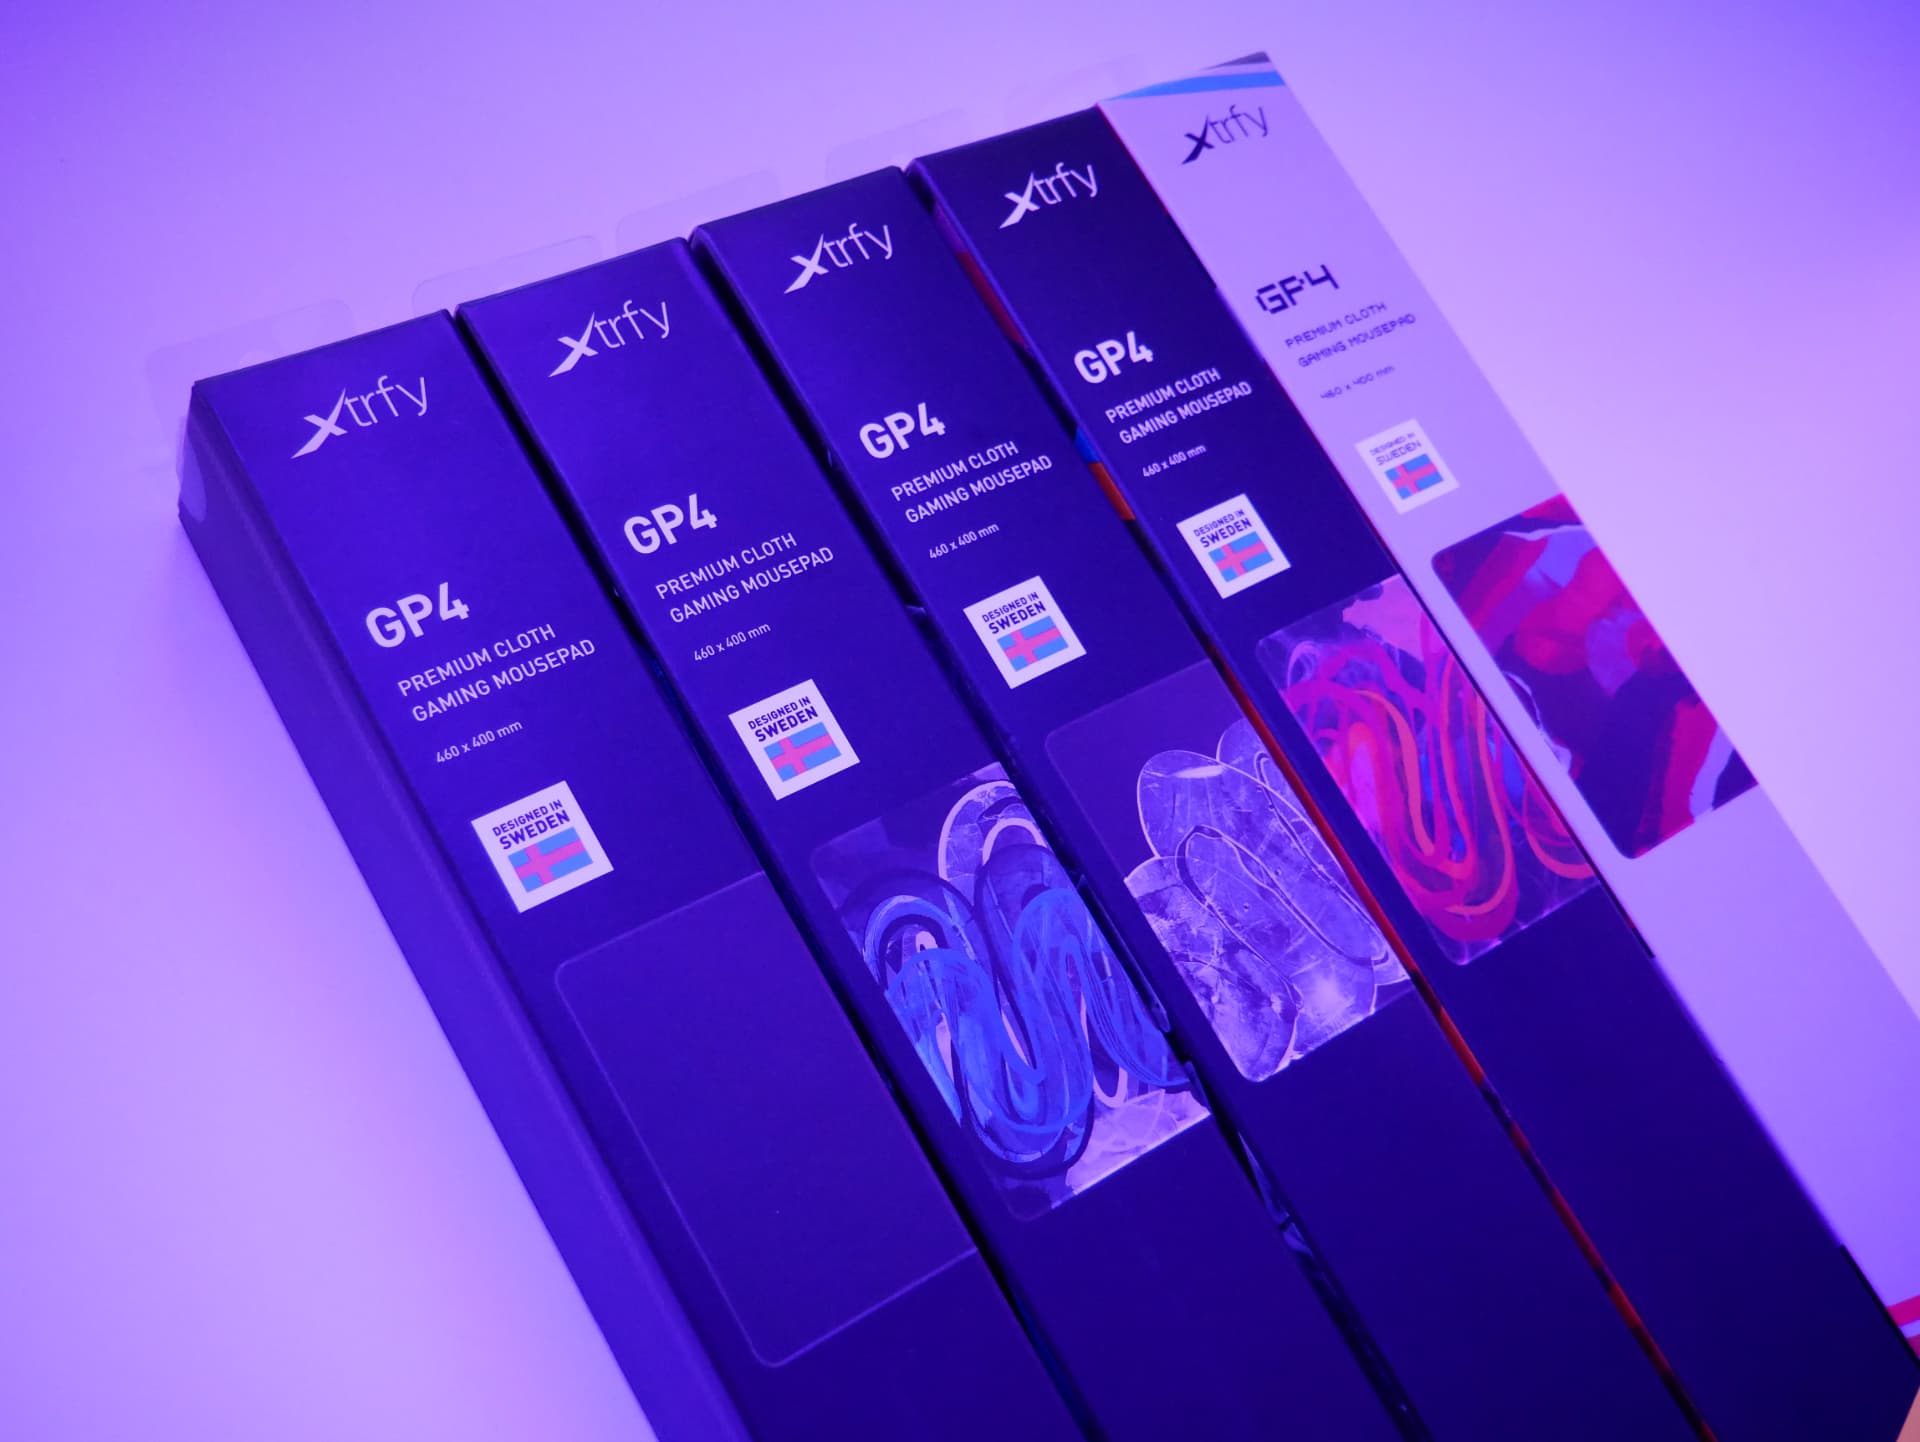 Xtrfy Gp4 レビュー アーティスティックなデザインが目を惹く 5色展開のゲーミングマウスパッド Dpqp